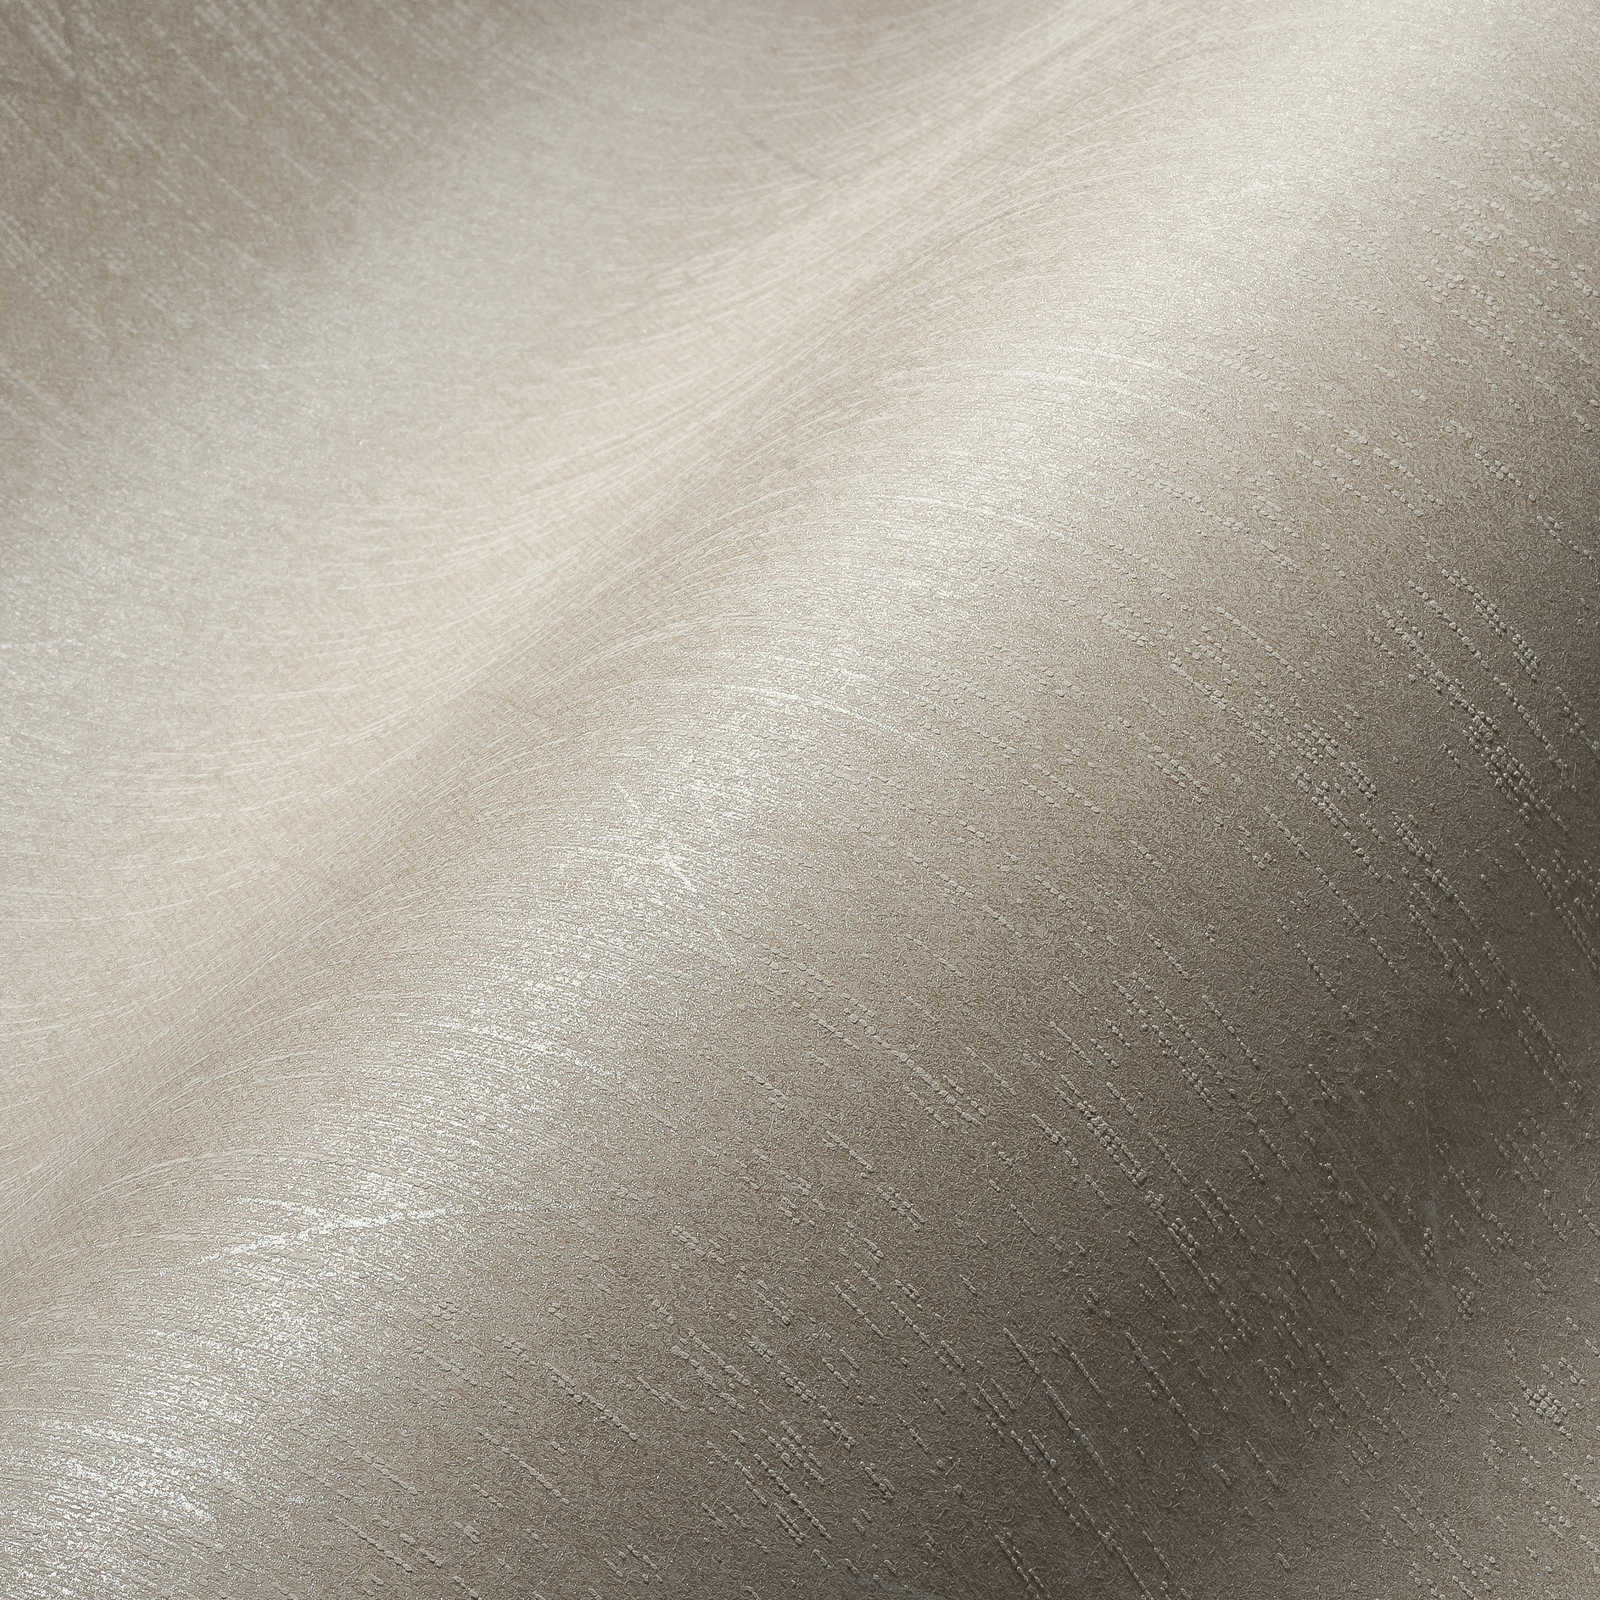             Licht Grijs Textiel Optiek Behang met Retro Stijl Glanzend Patroon - Grijs
        